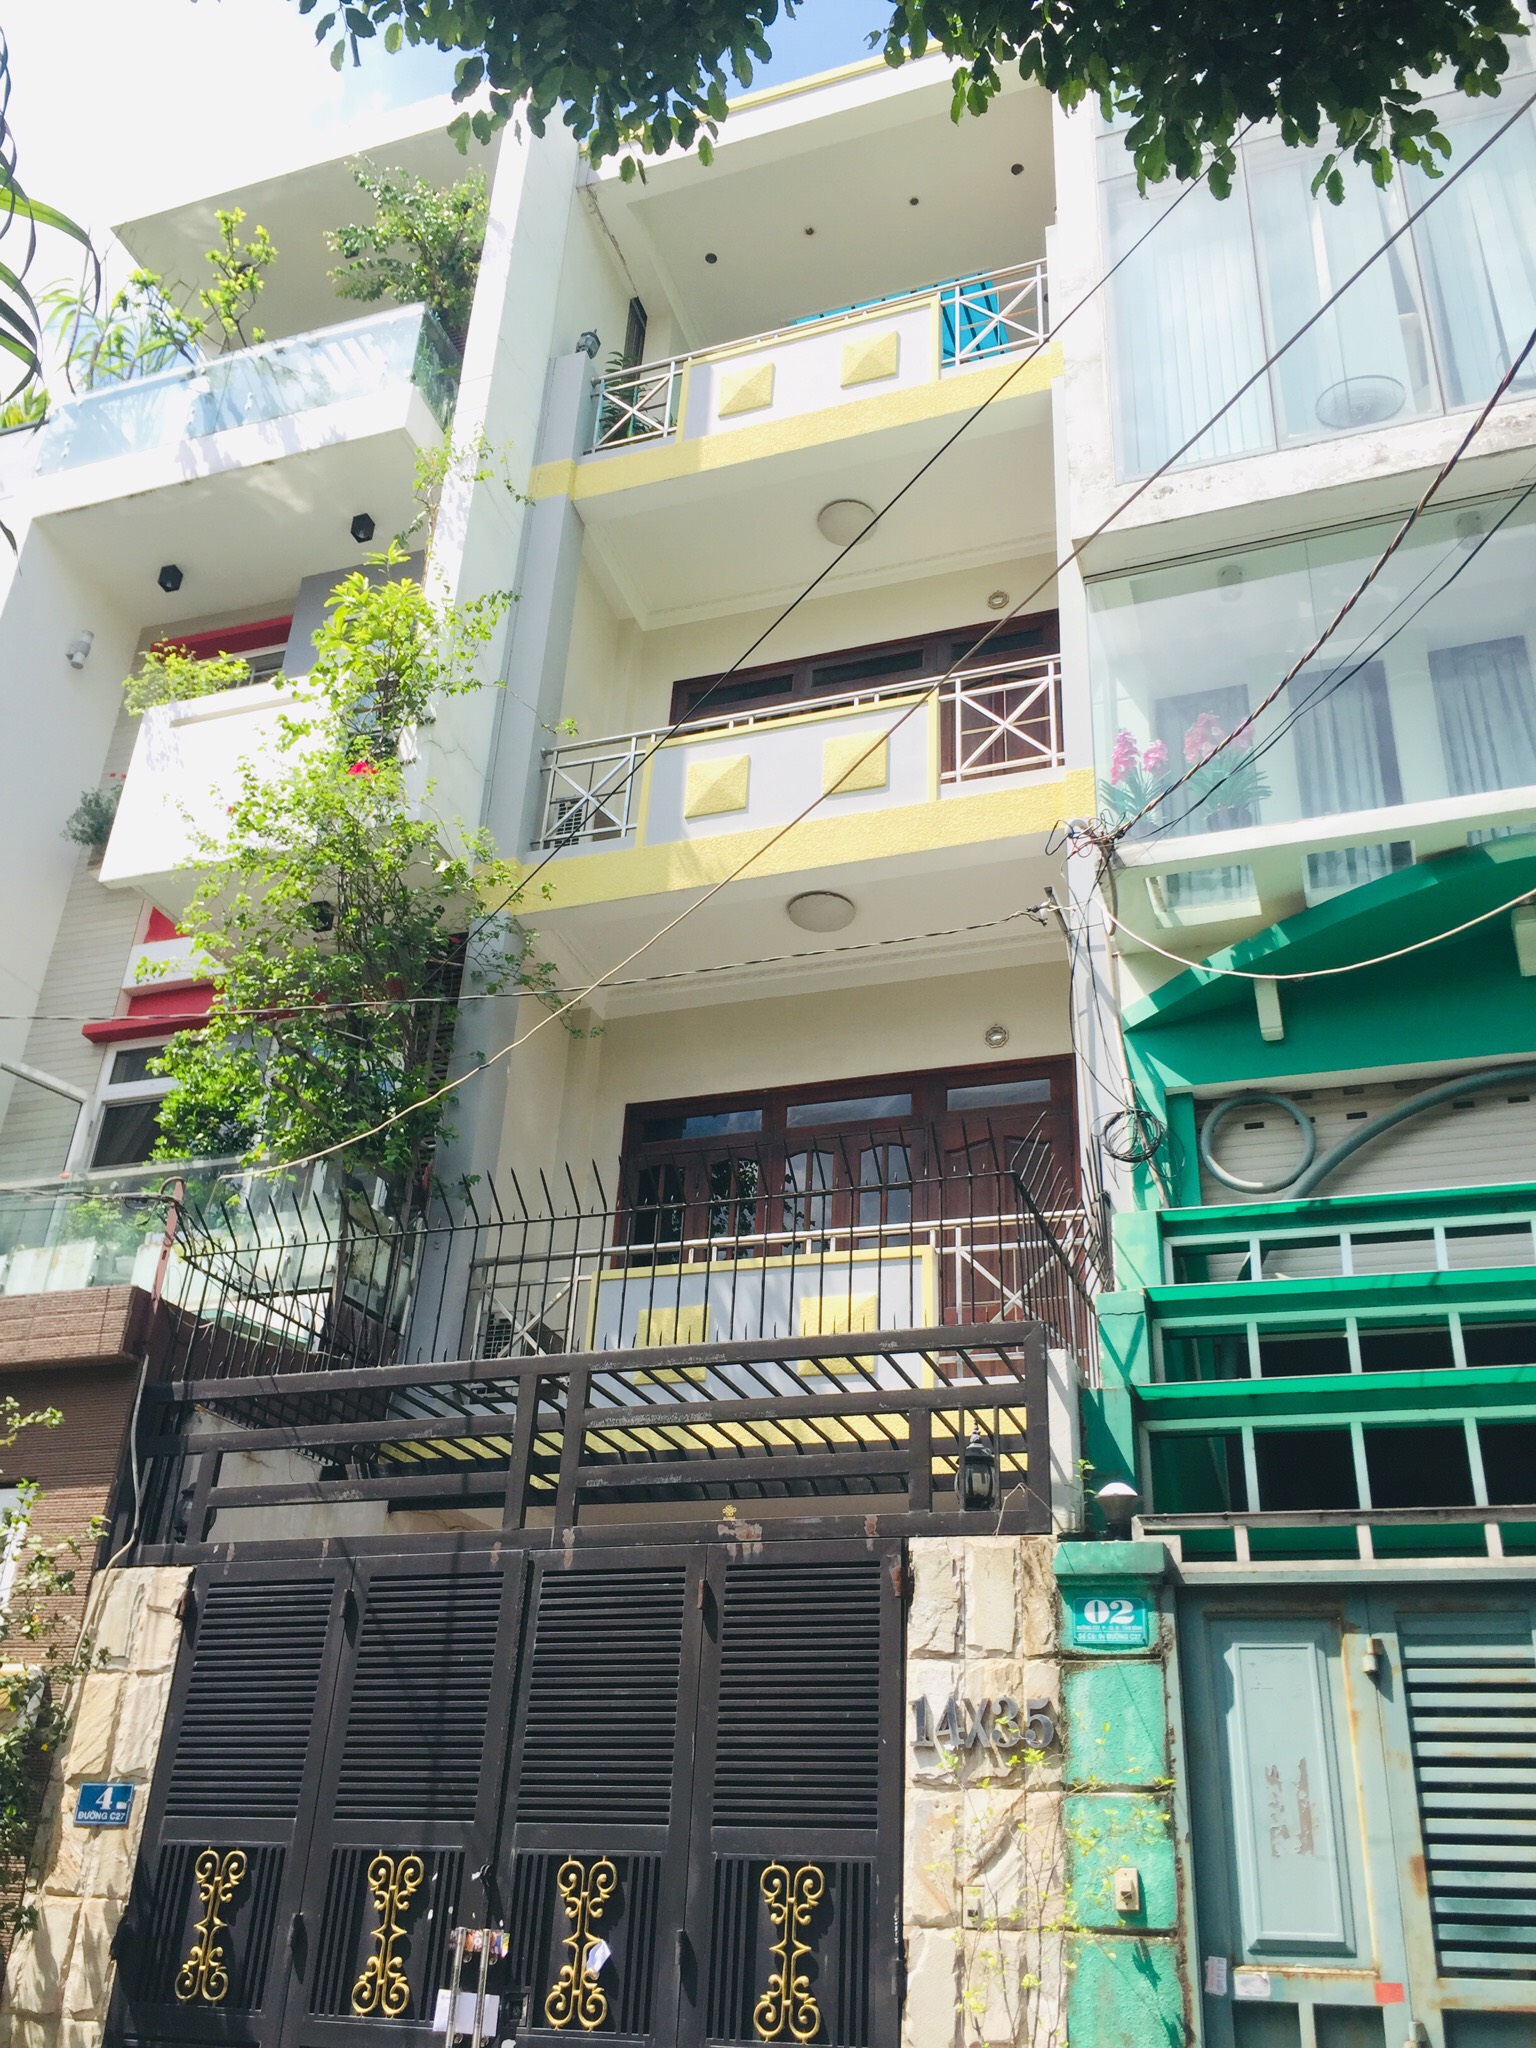 Bán nhà mặt tiền đường Lam Sơn, p2, TB. Xây dựng mới 4 tầng, đẹp